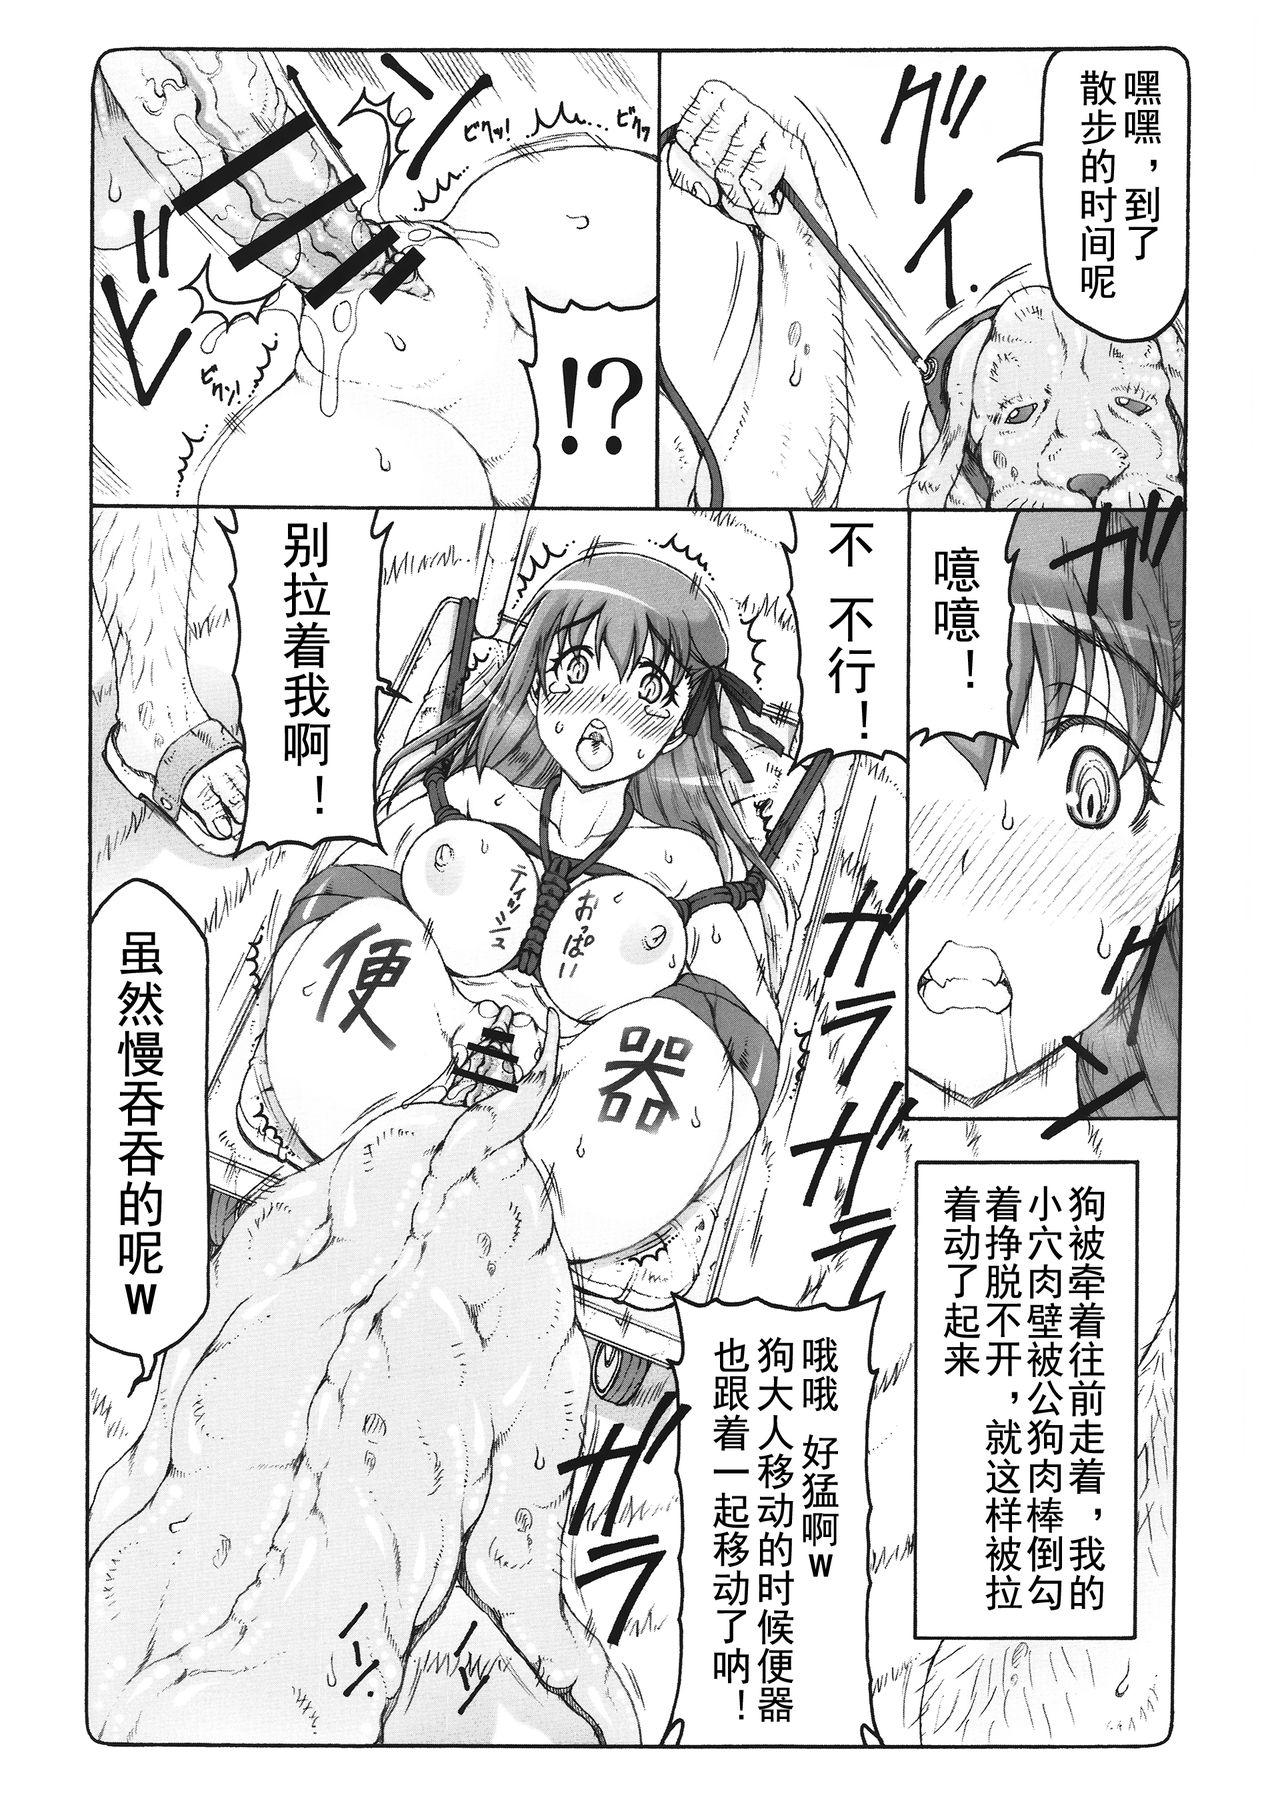 Self Kotori 14 - Fate stay night Close - Page 8